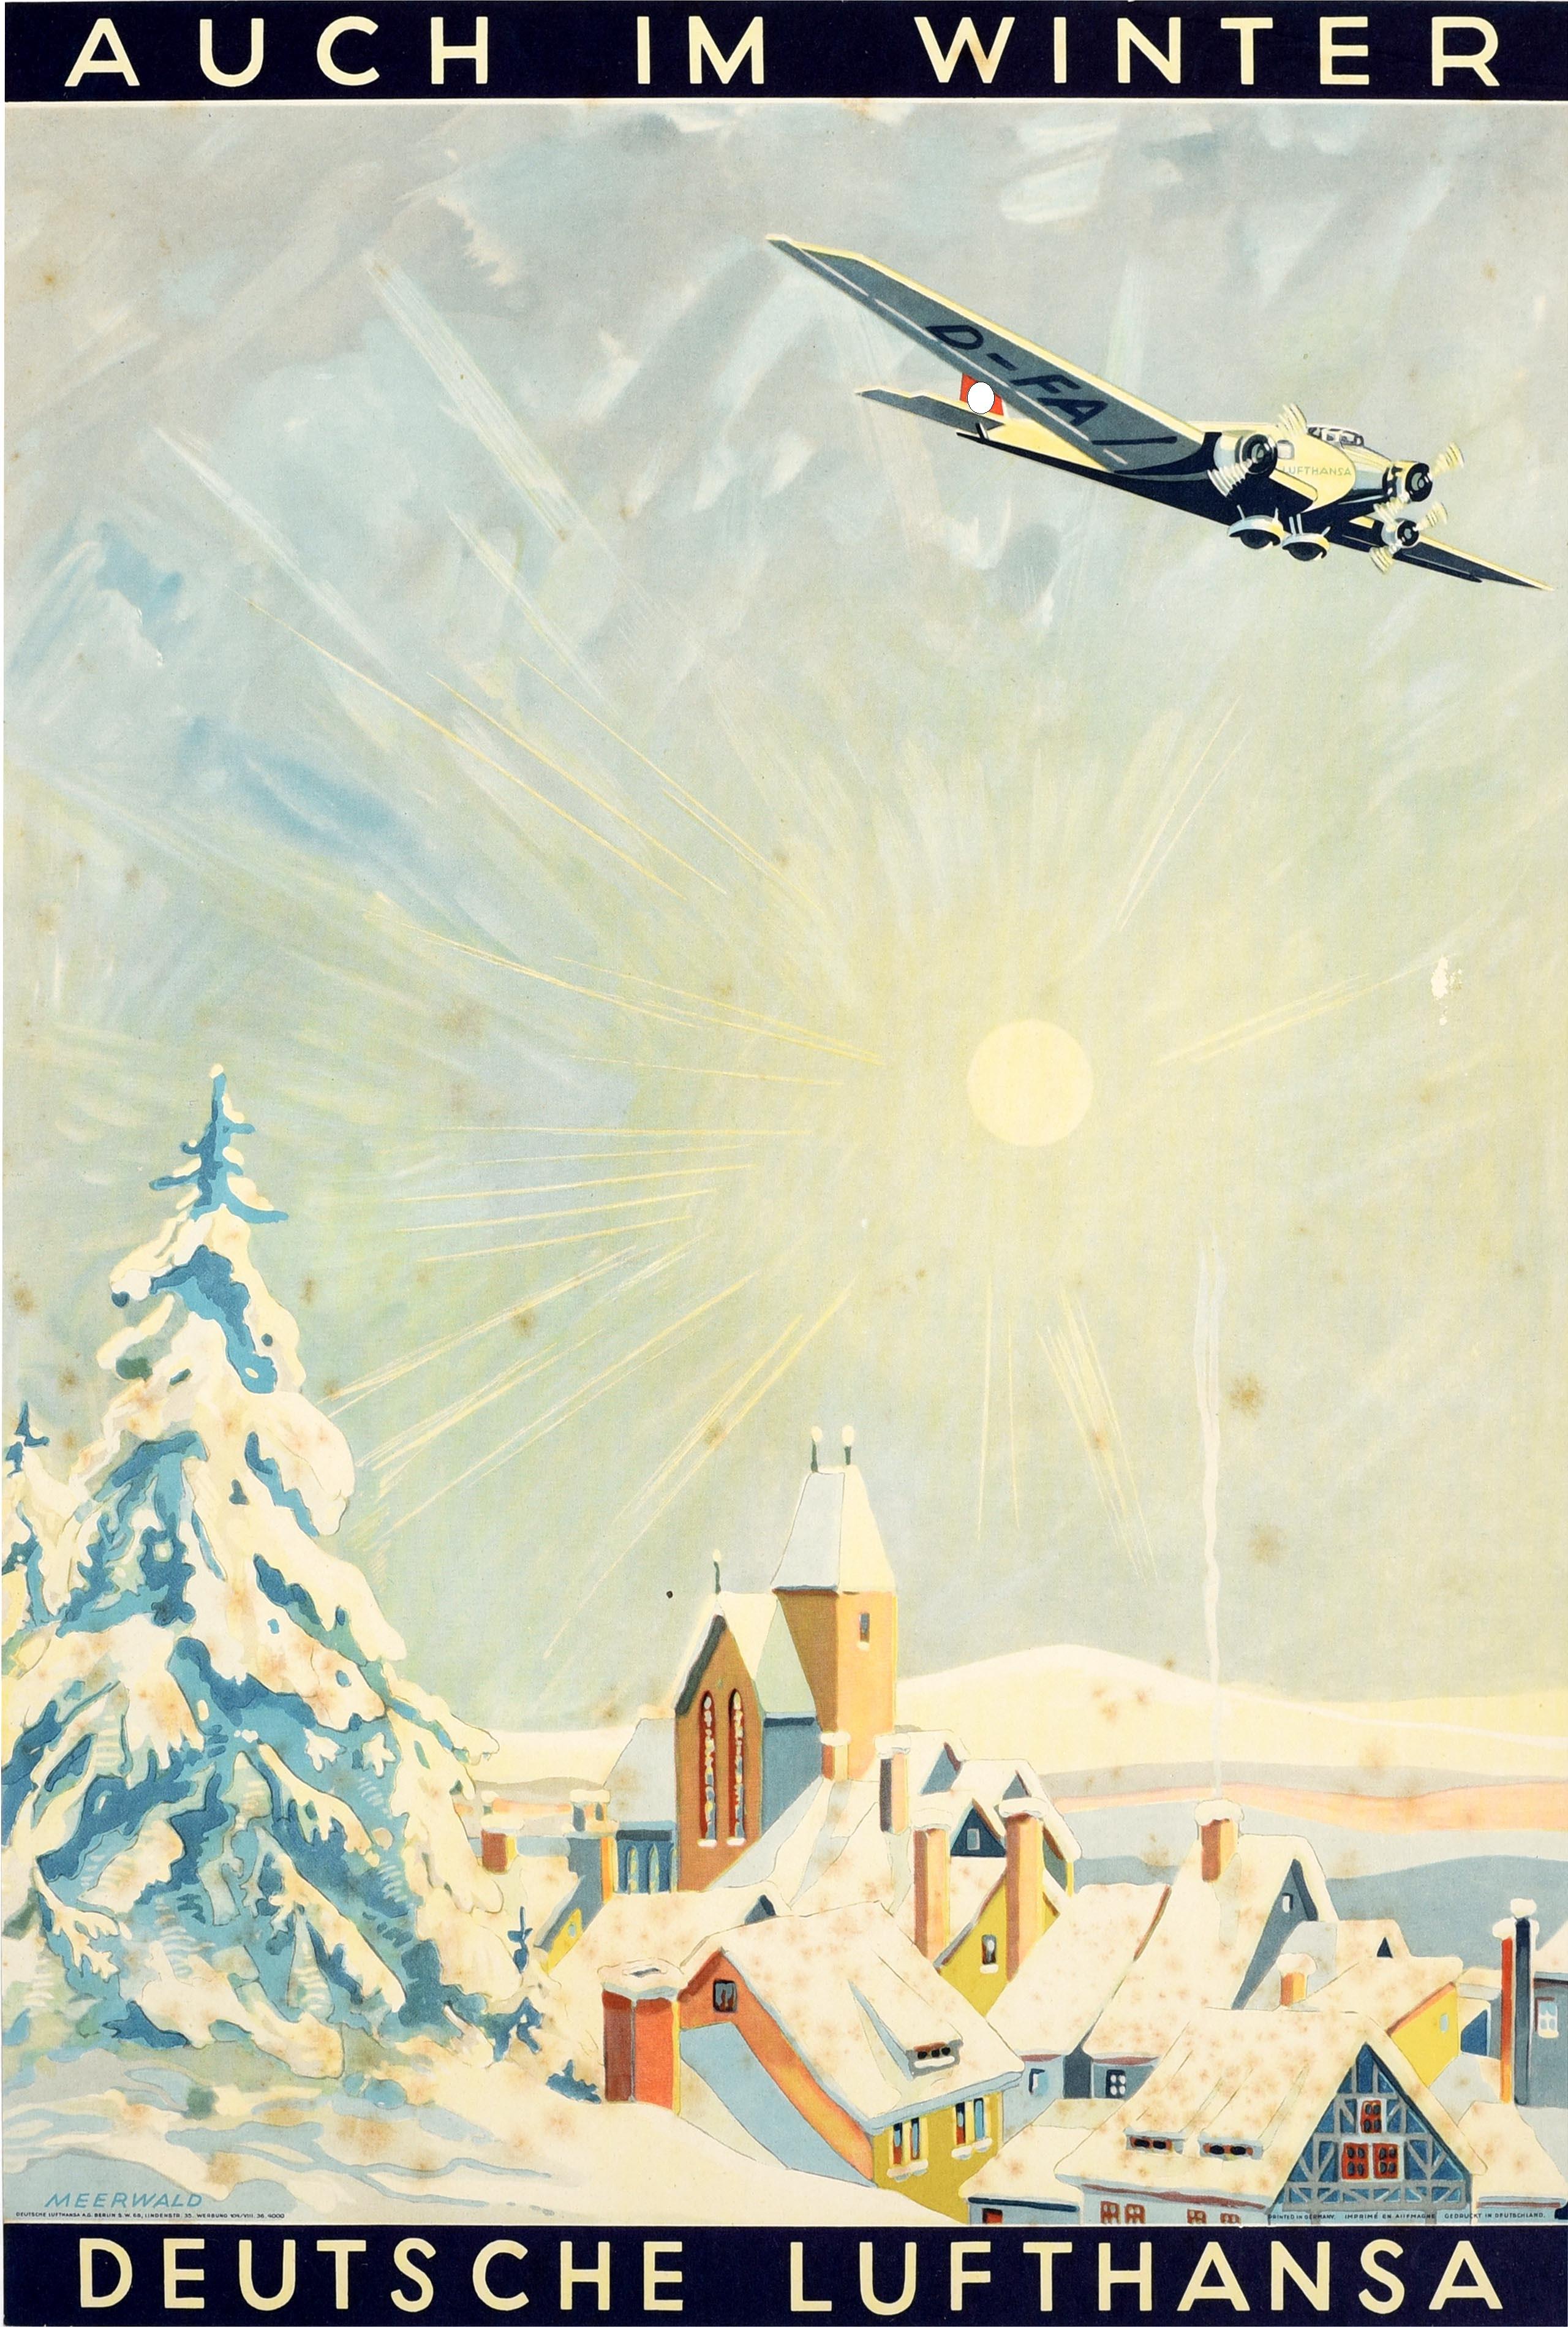 Unknown Print - Original Vintage Travel Poster Auch Im Winter Deutsche Lufthansa Also In Winter